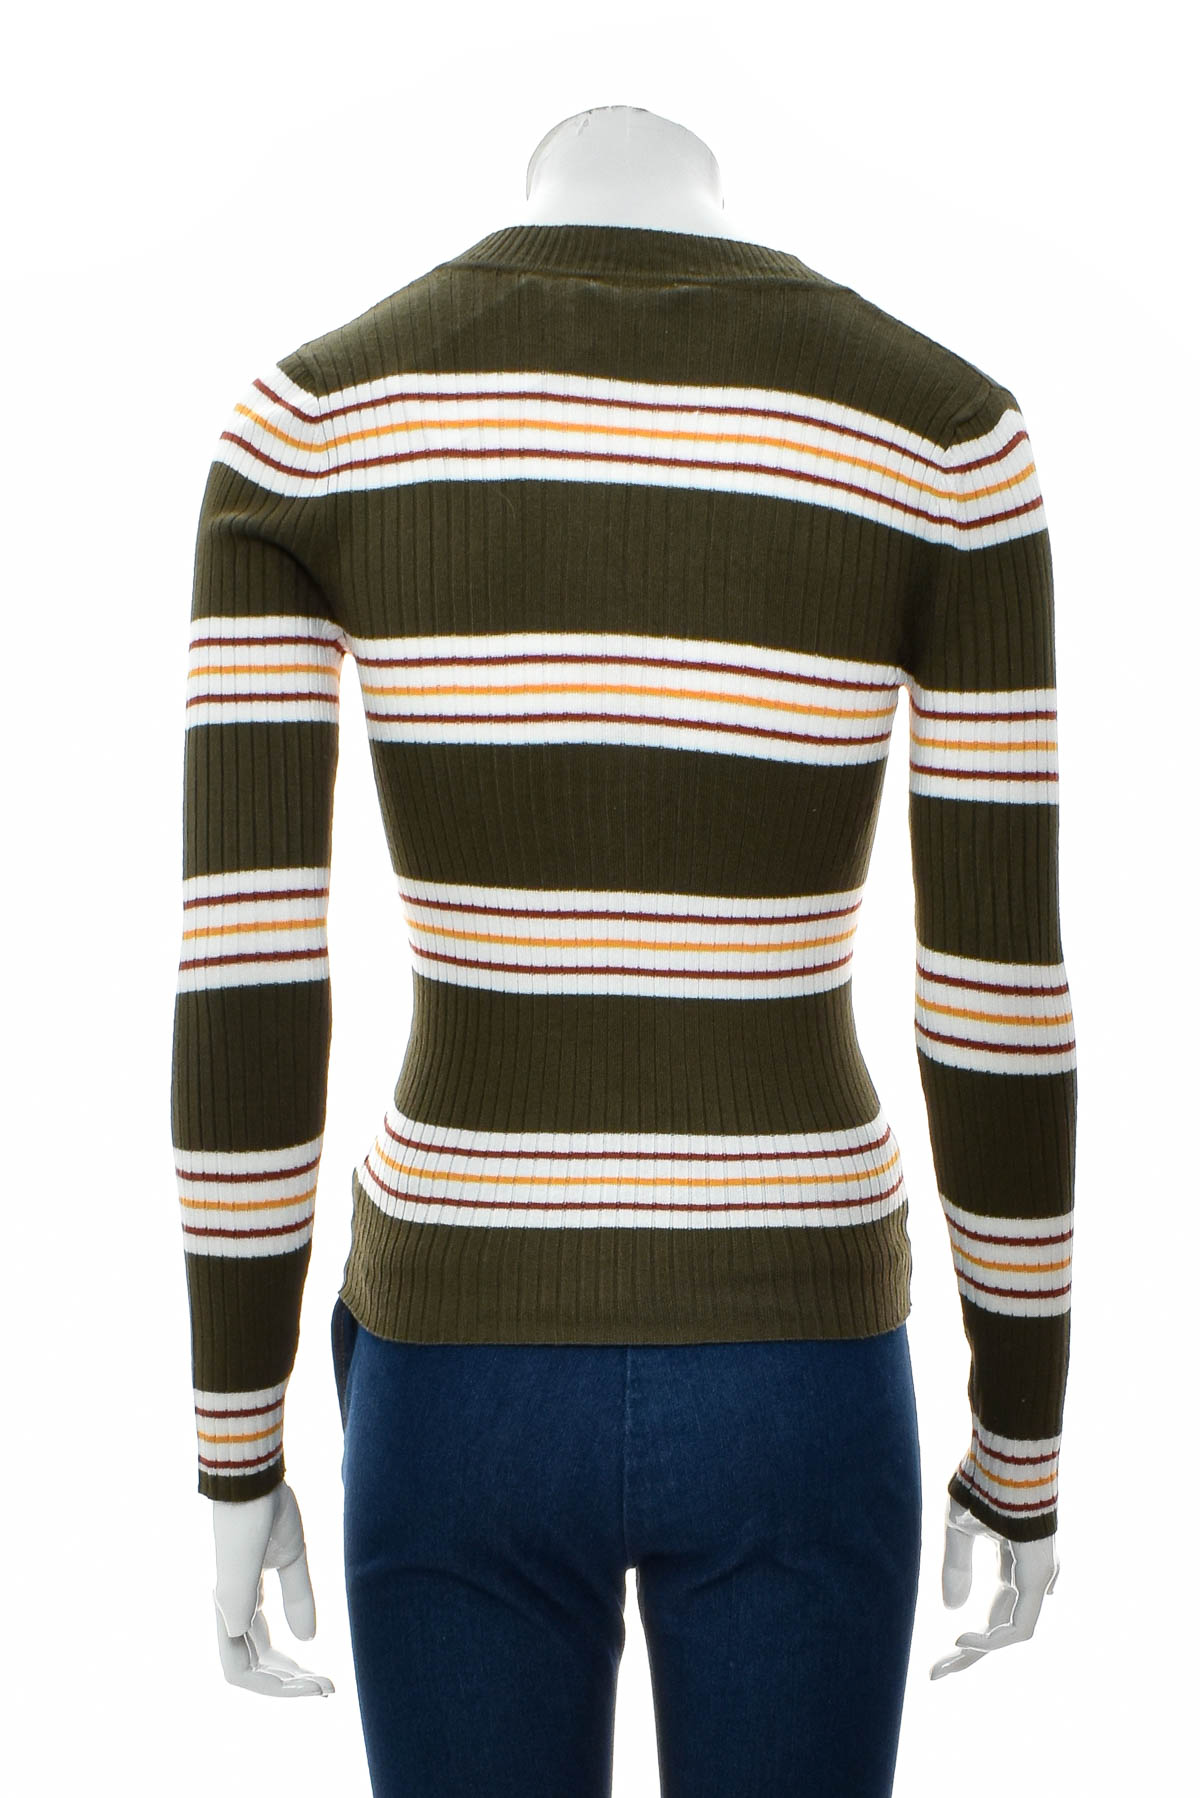 Women's sweater - NO BOUNDARIES - 1